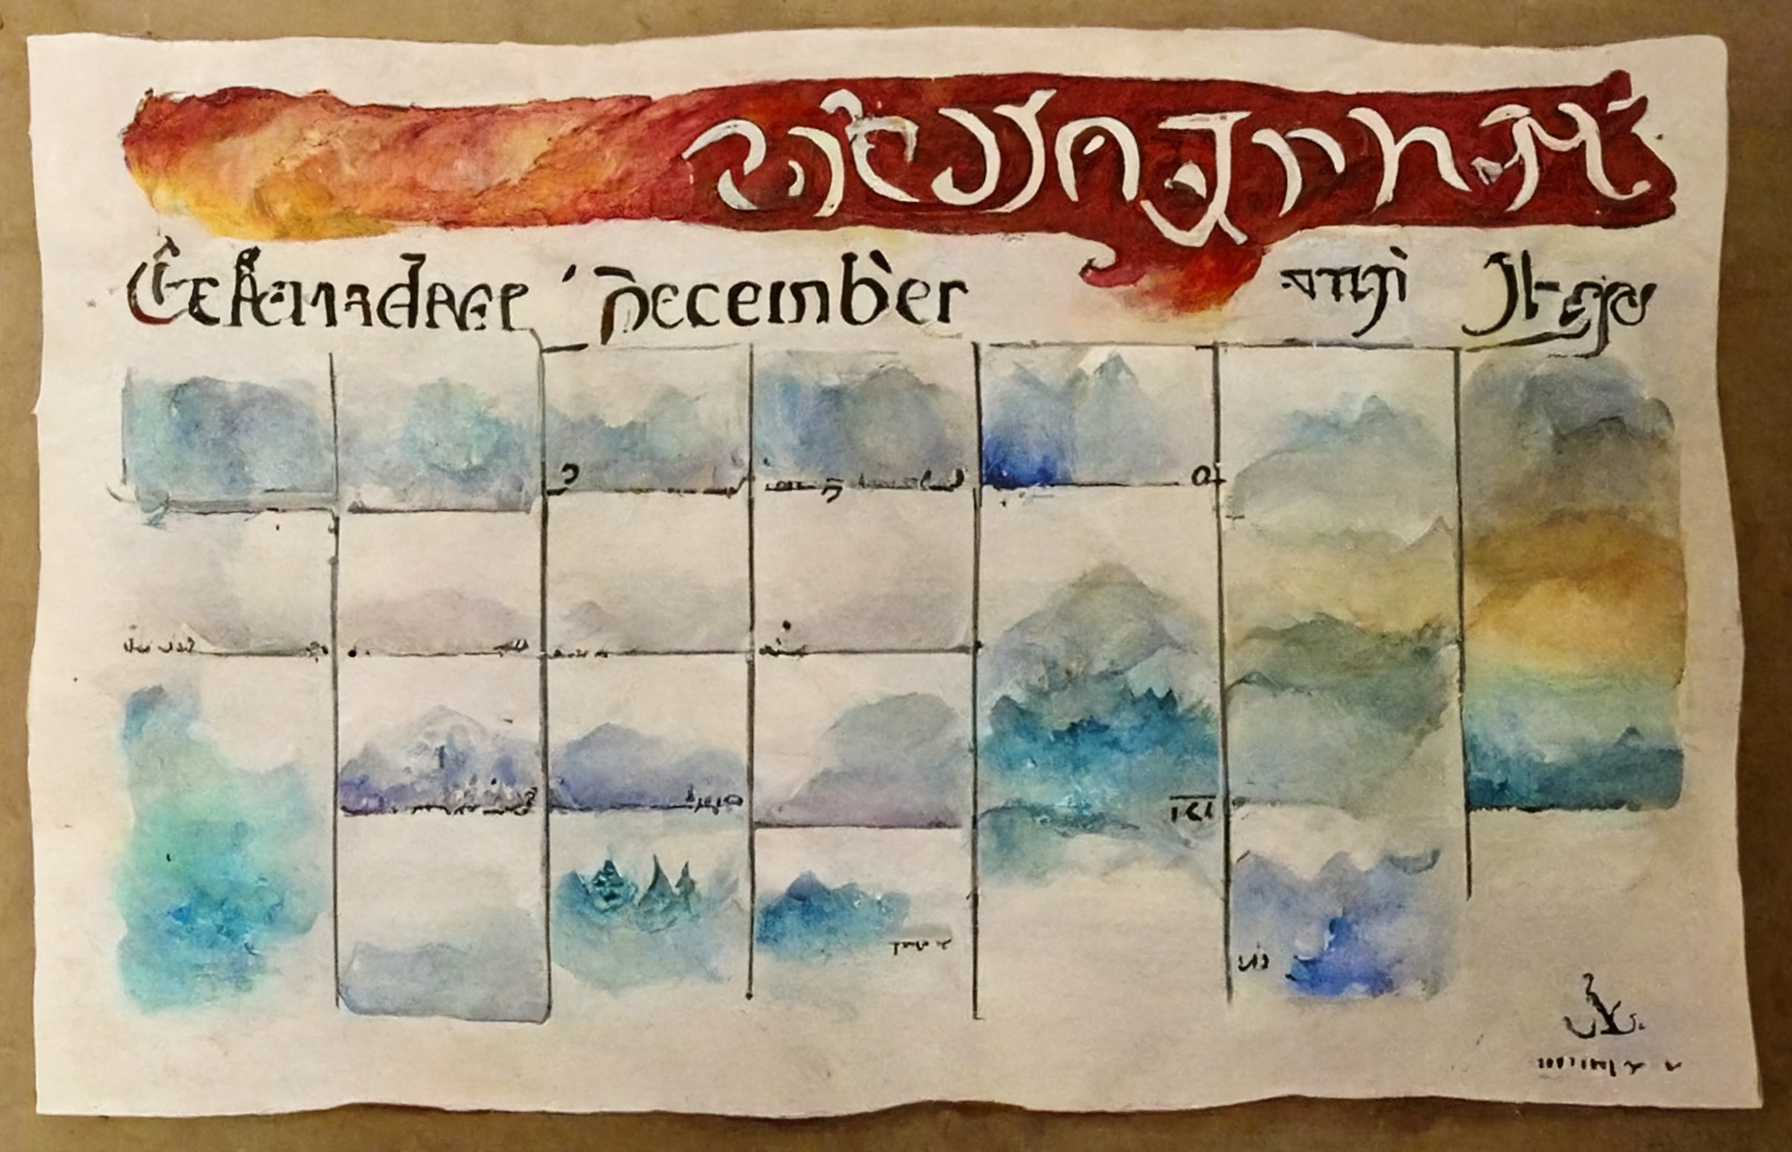 December calendar with Tengwar